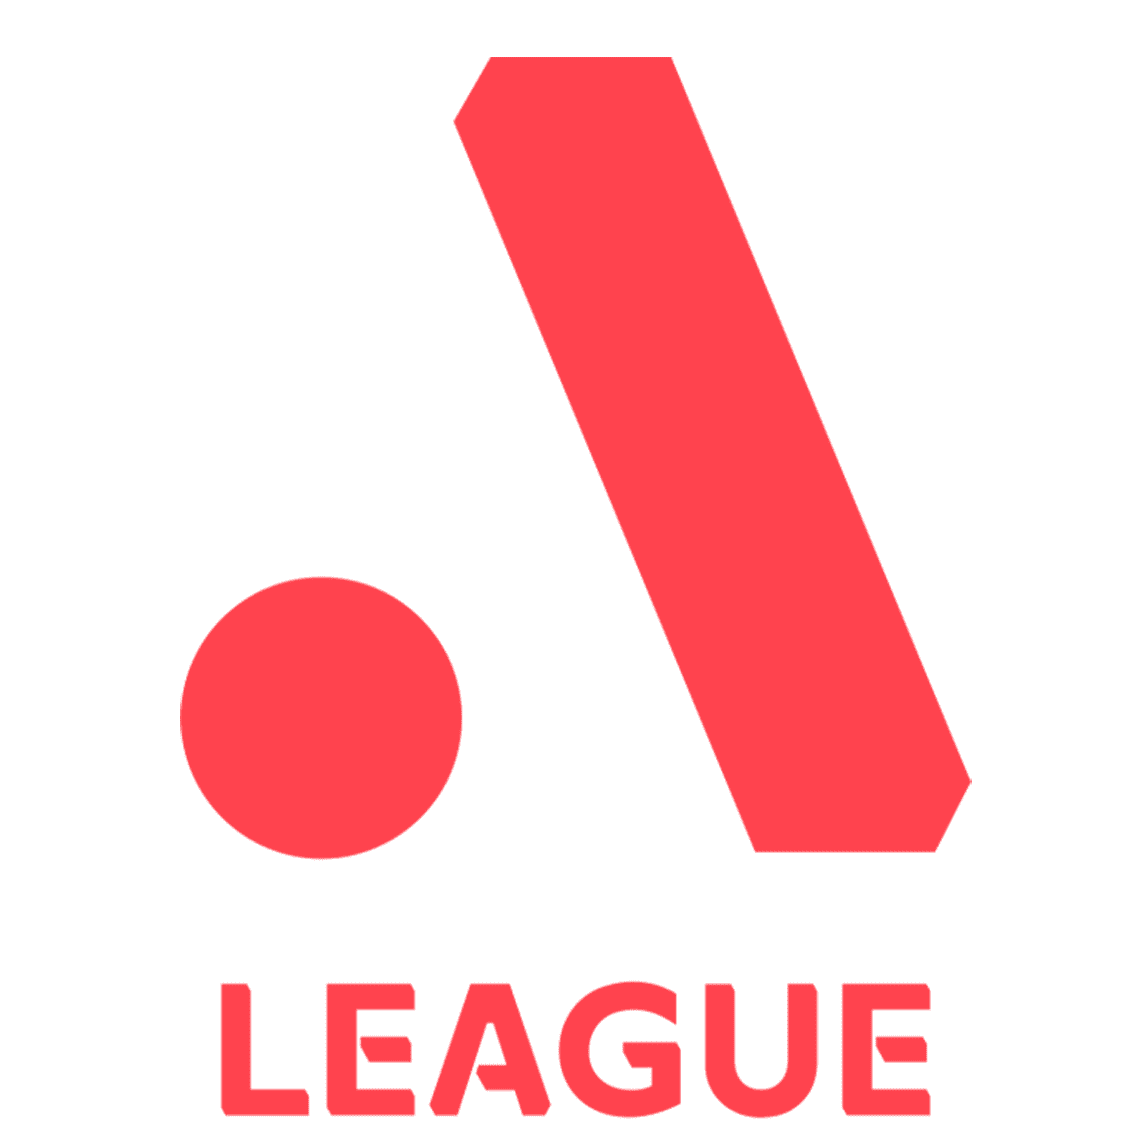 A-Leagues